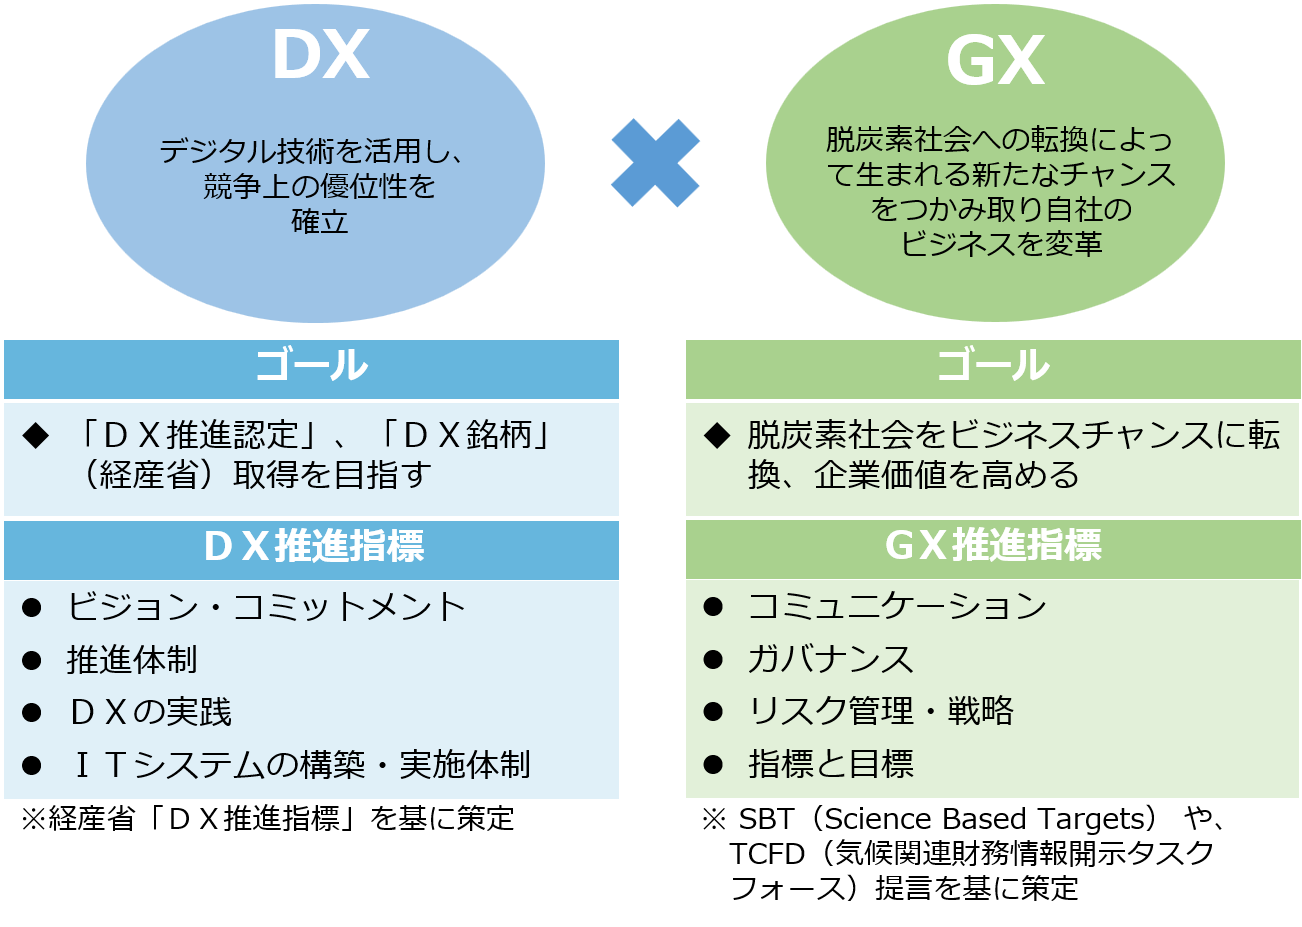 リサイクルビジネスにおけるDX・GX推進指標